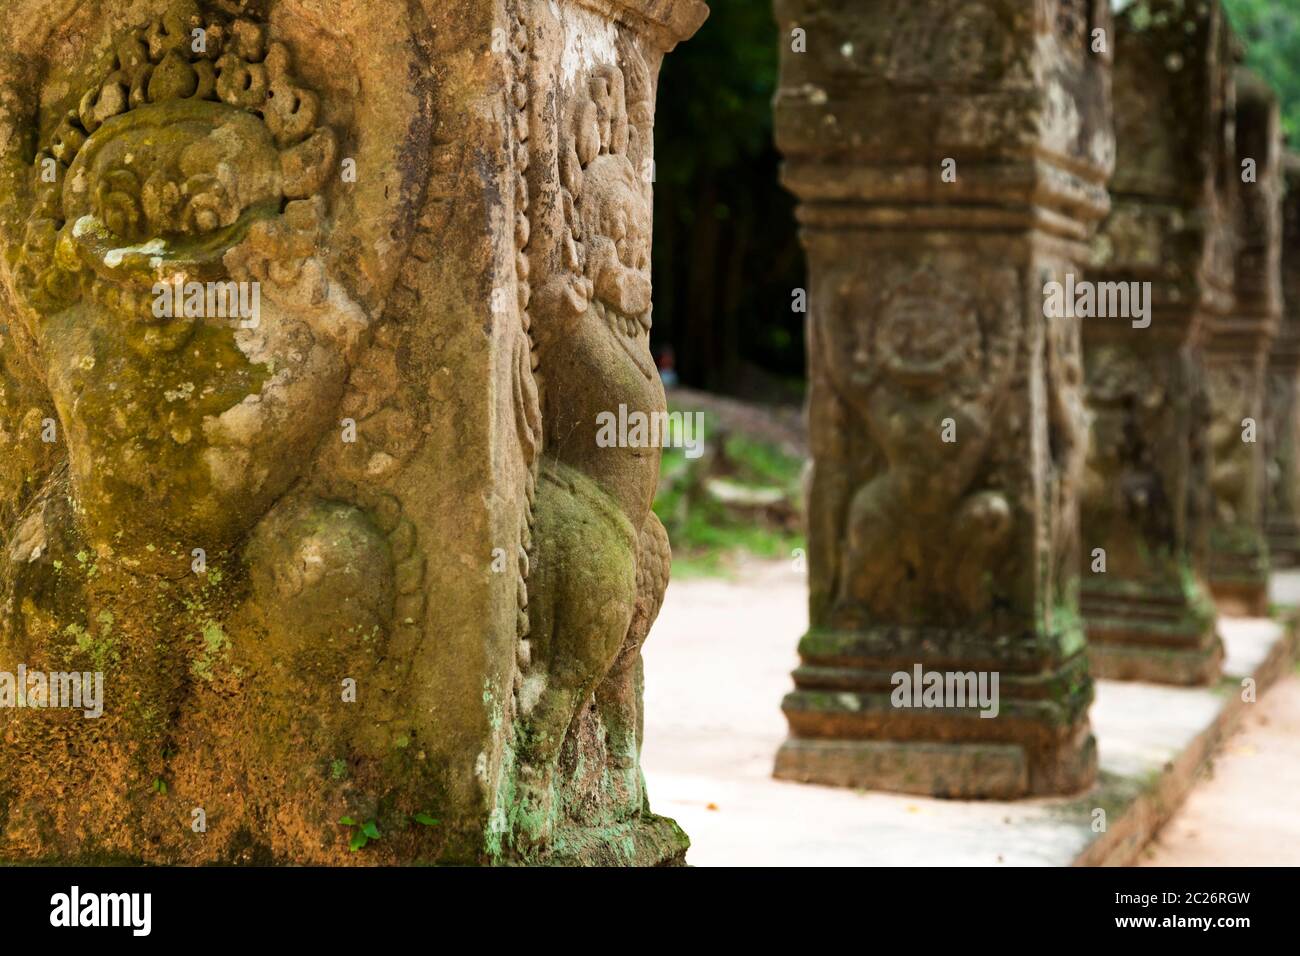 Pilar de piedra cavada al lado de la puerta de acceso al oeste del templo de Preah Khan, antigua capital del Imperio Khmer, Siem Reap, Camboya, Asia del sudeste, Asia Foto de stock